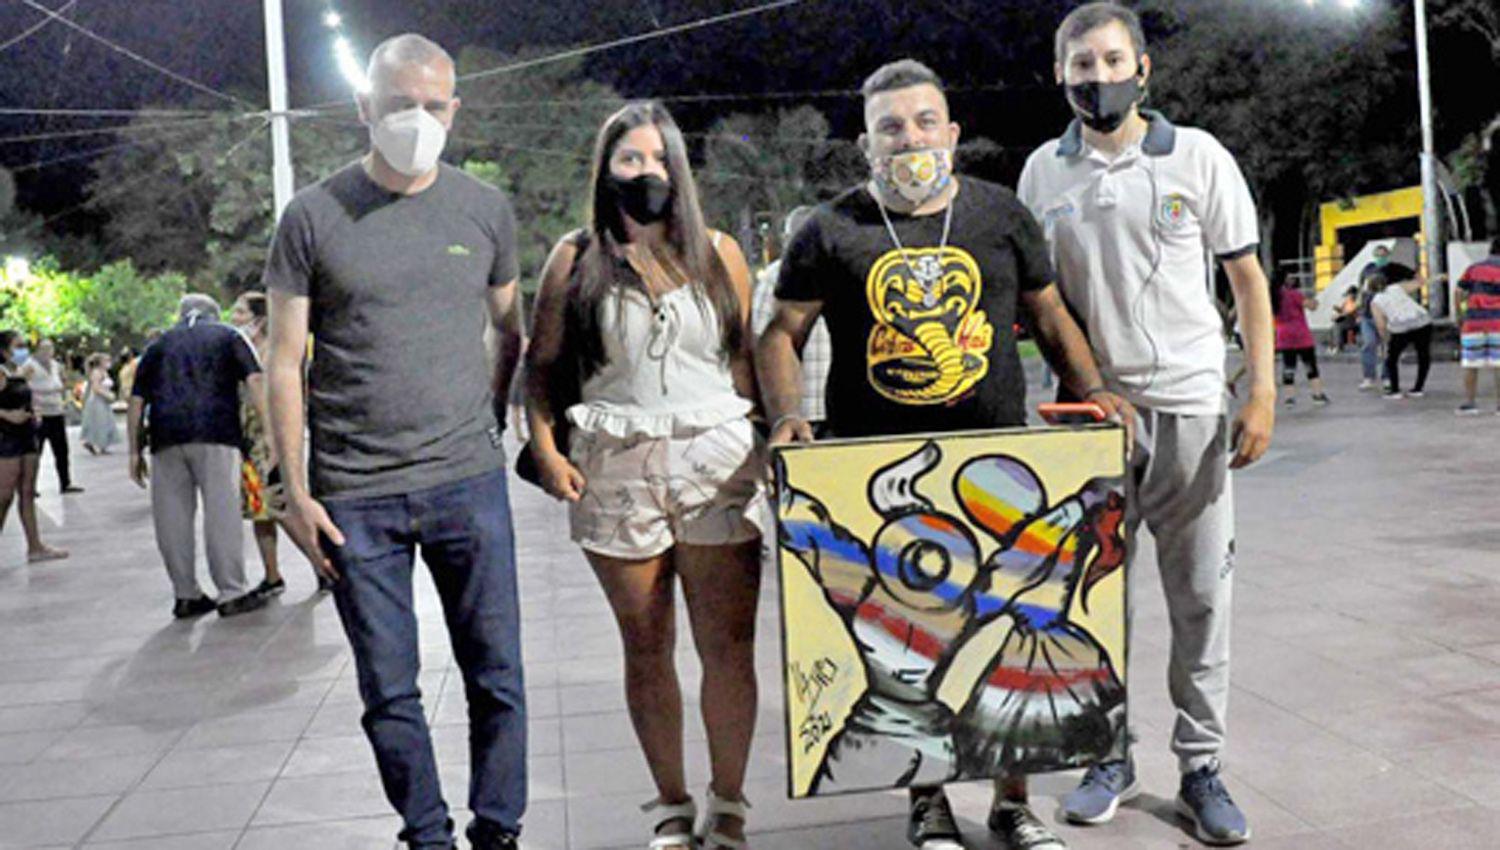 El artista plaacutestico Horacio Viacutector Orlando Sequeira donoacute un cuadro titulado ldquoPincelada de Zambardquo